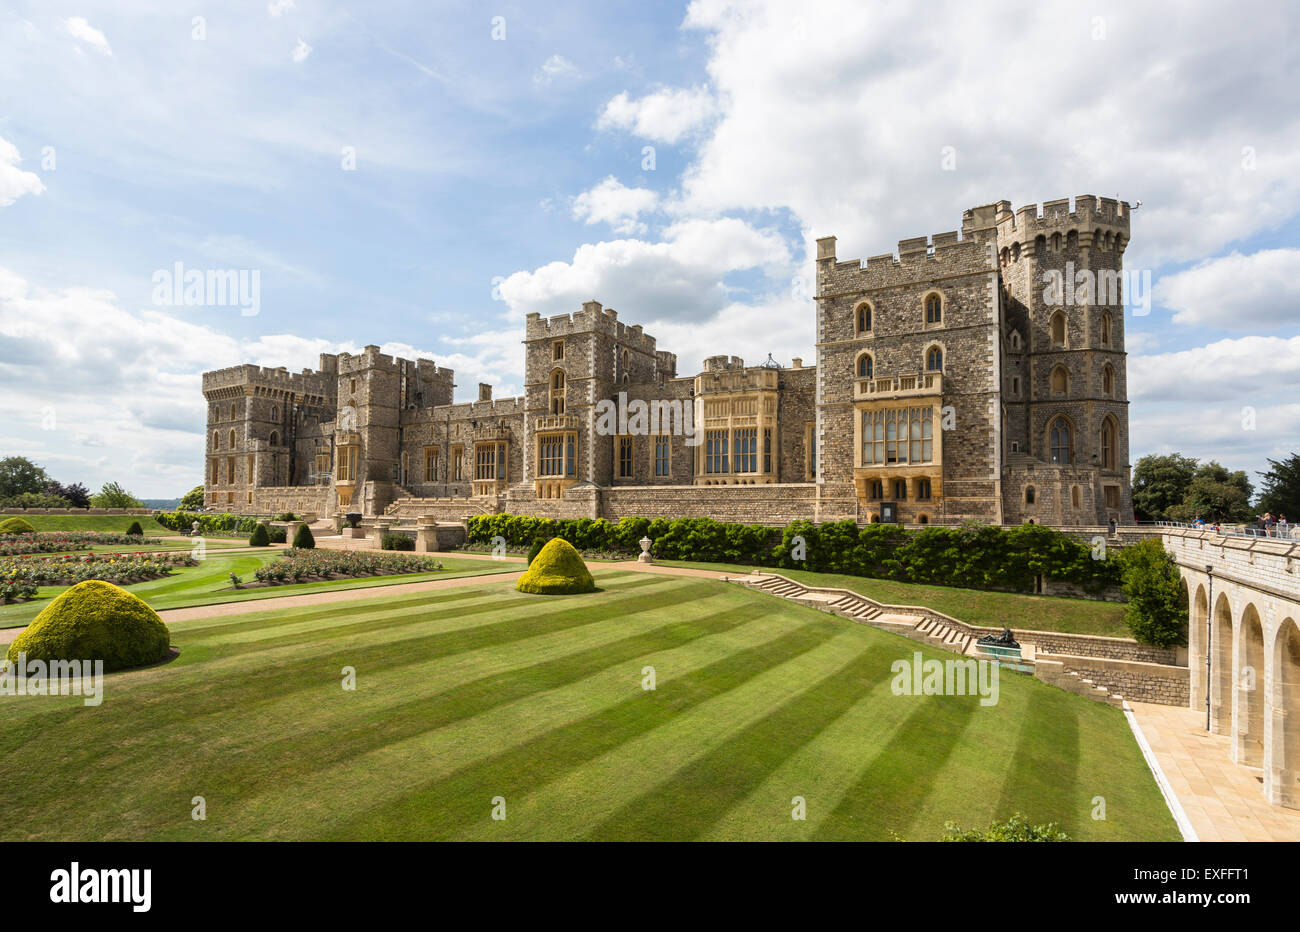 Royal English curiosités : vue sur le château de Windsor, en Angleterre, avec pelouses et jardins, Prince of Wales's Tower et la Tour du Nouveau-Brunswick, sur une journée ensoleillée Banque D'Images